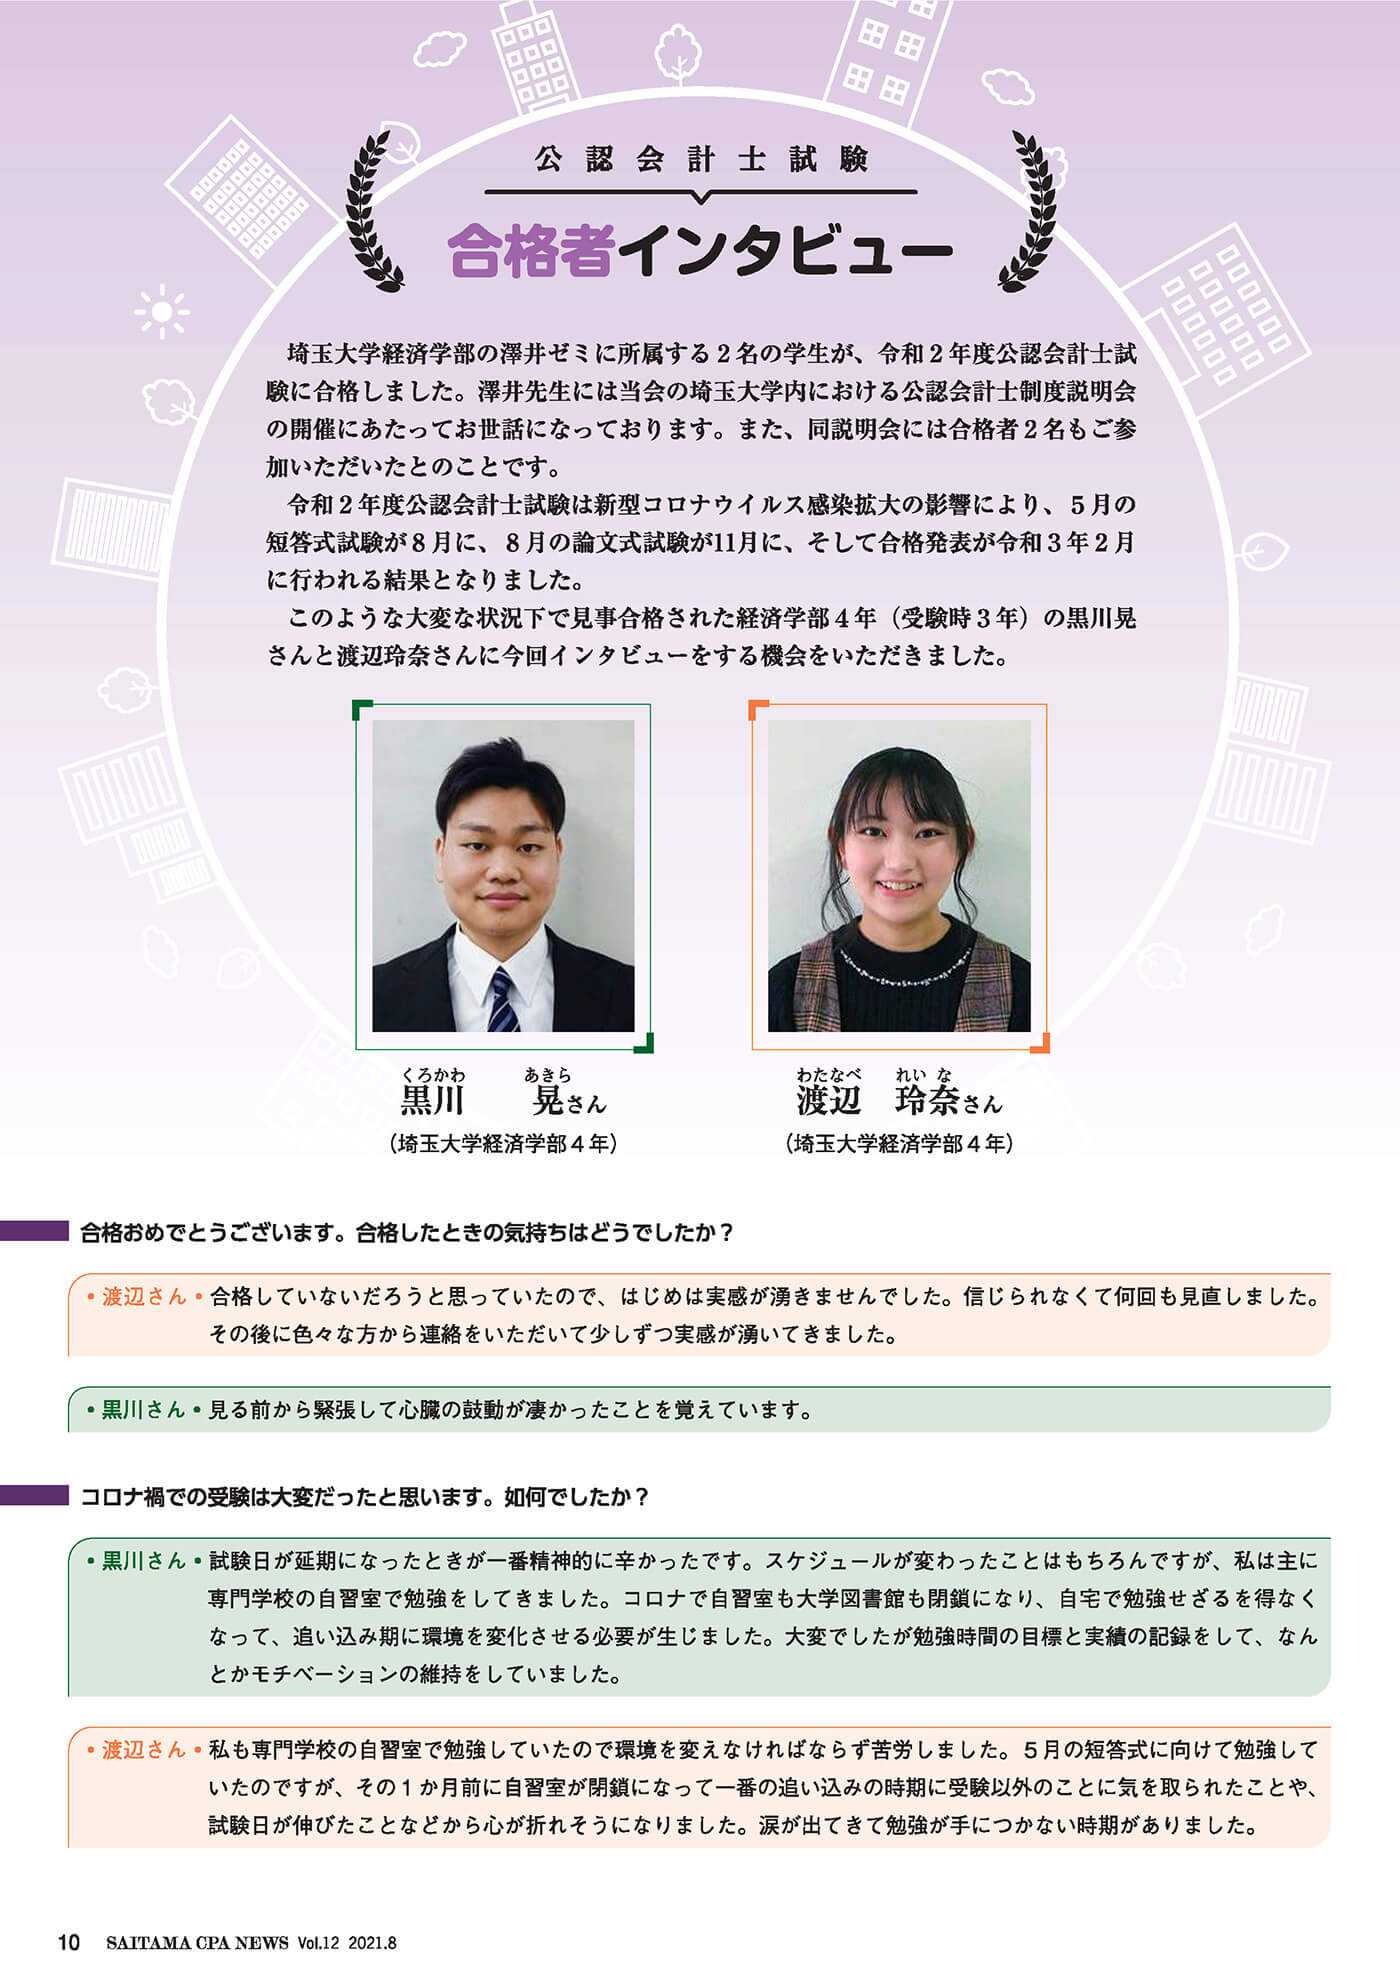 澤井ゼミの学生2名が公認会計士試験に合格し、会計士協会埼玉会から取材を受けました。